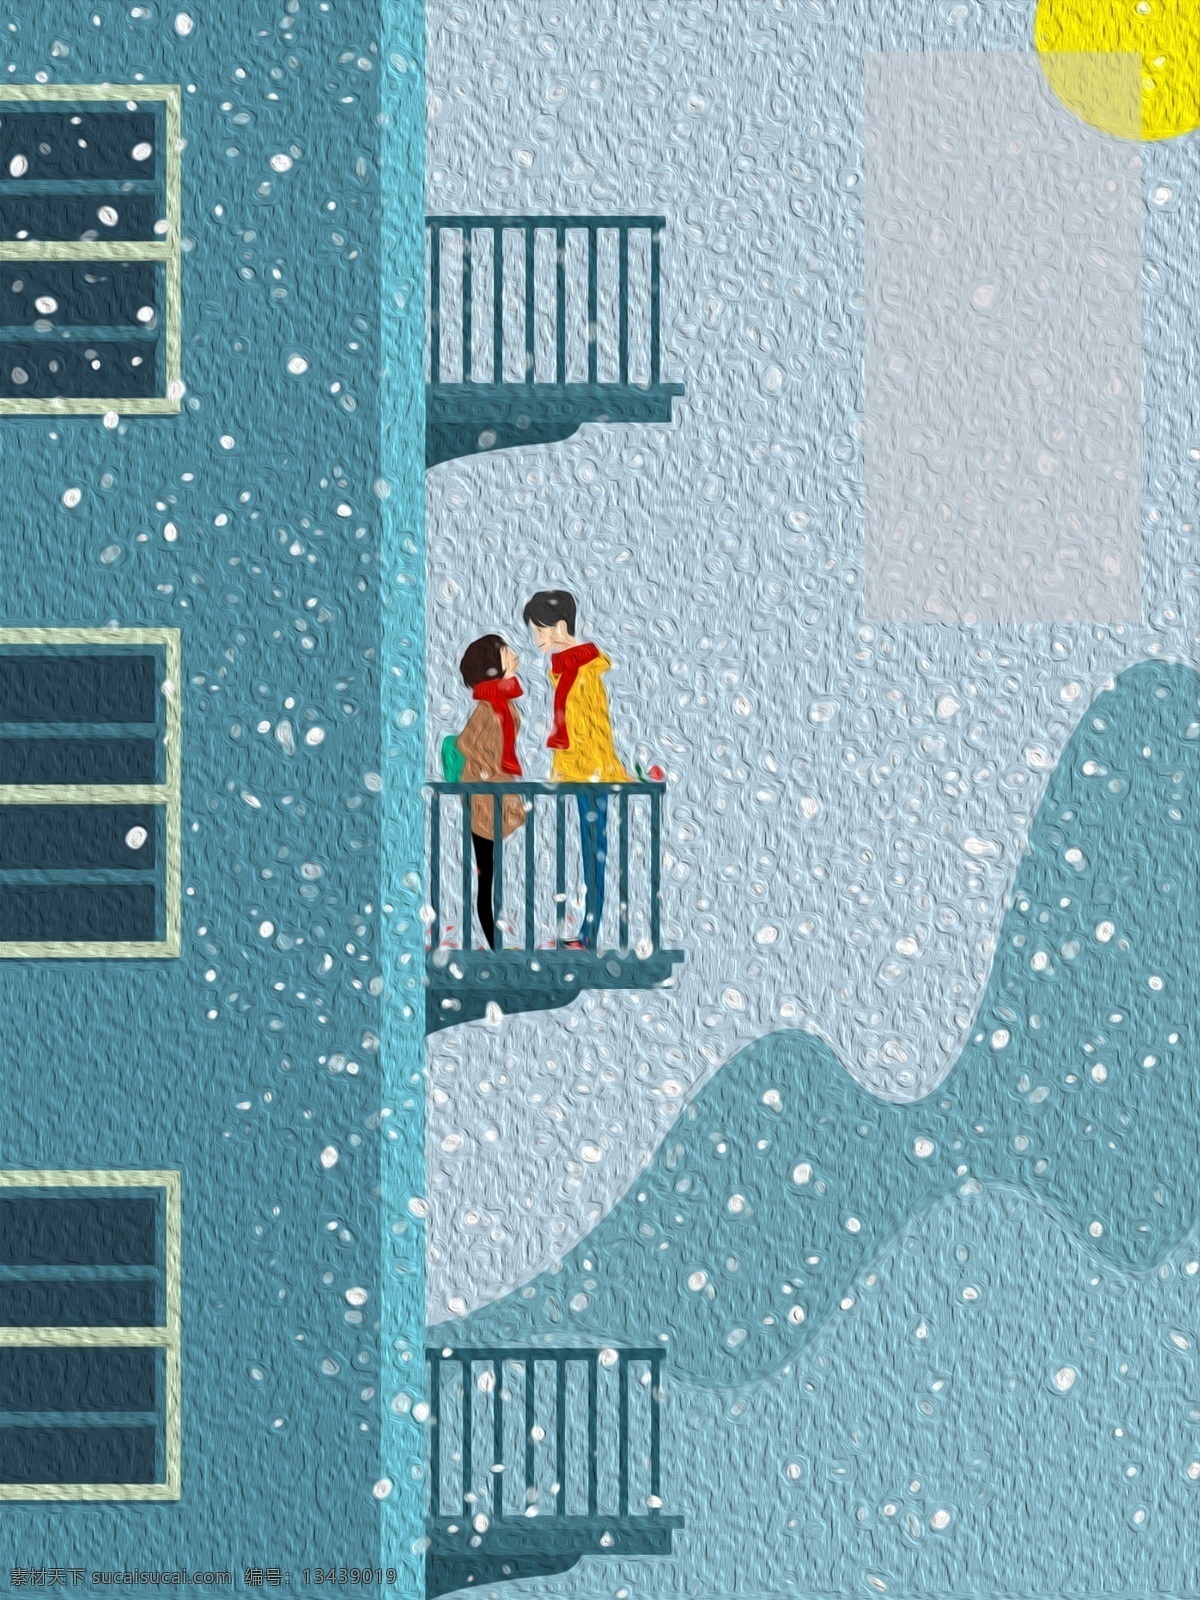 小寒 节气 阳台 上 说话 情侣 背景 冬季 冬天 建筑 背景素材 下雪 小寒节气 飘雪